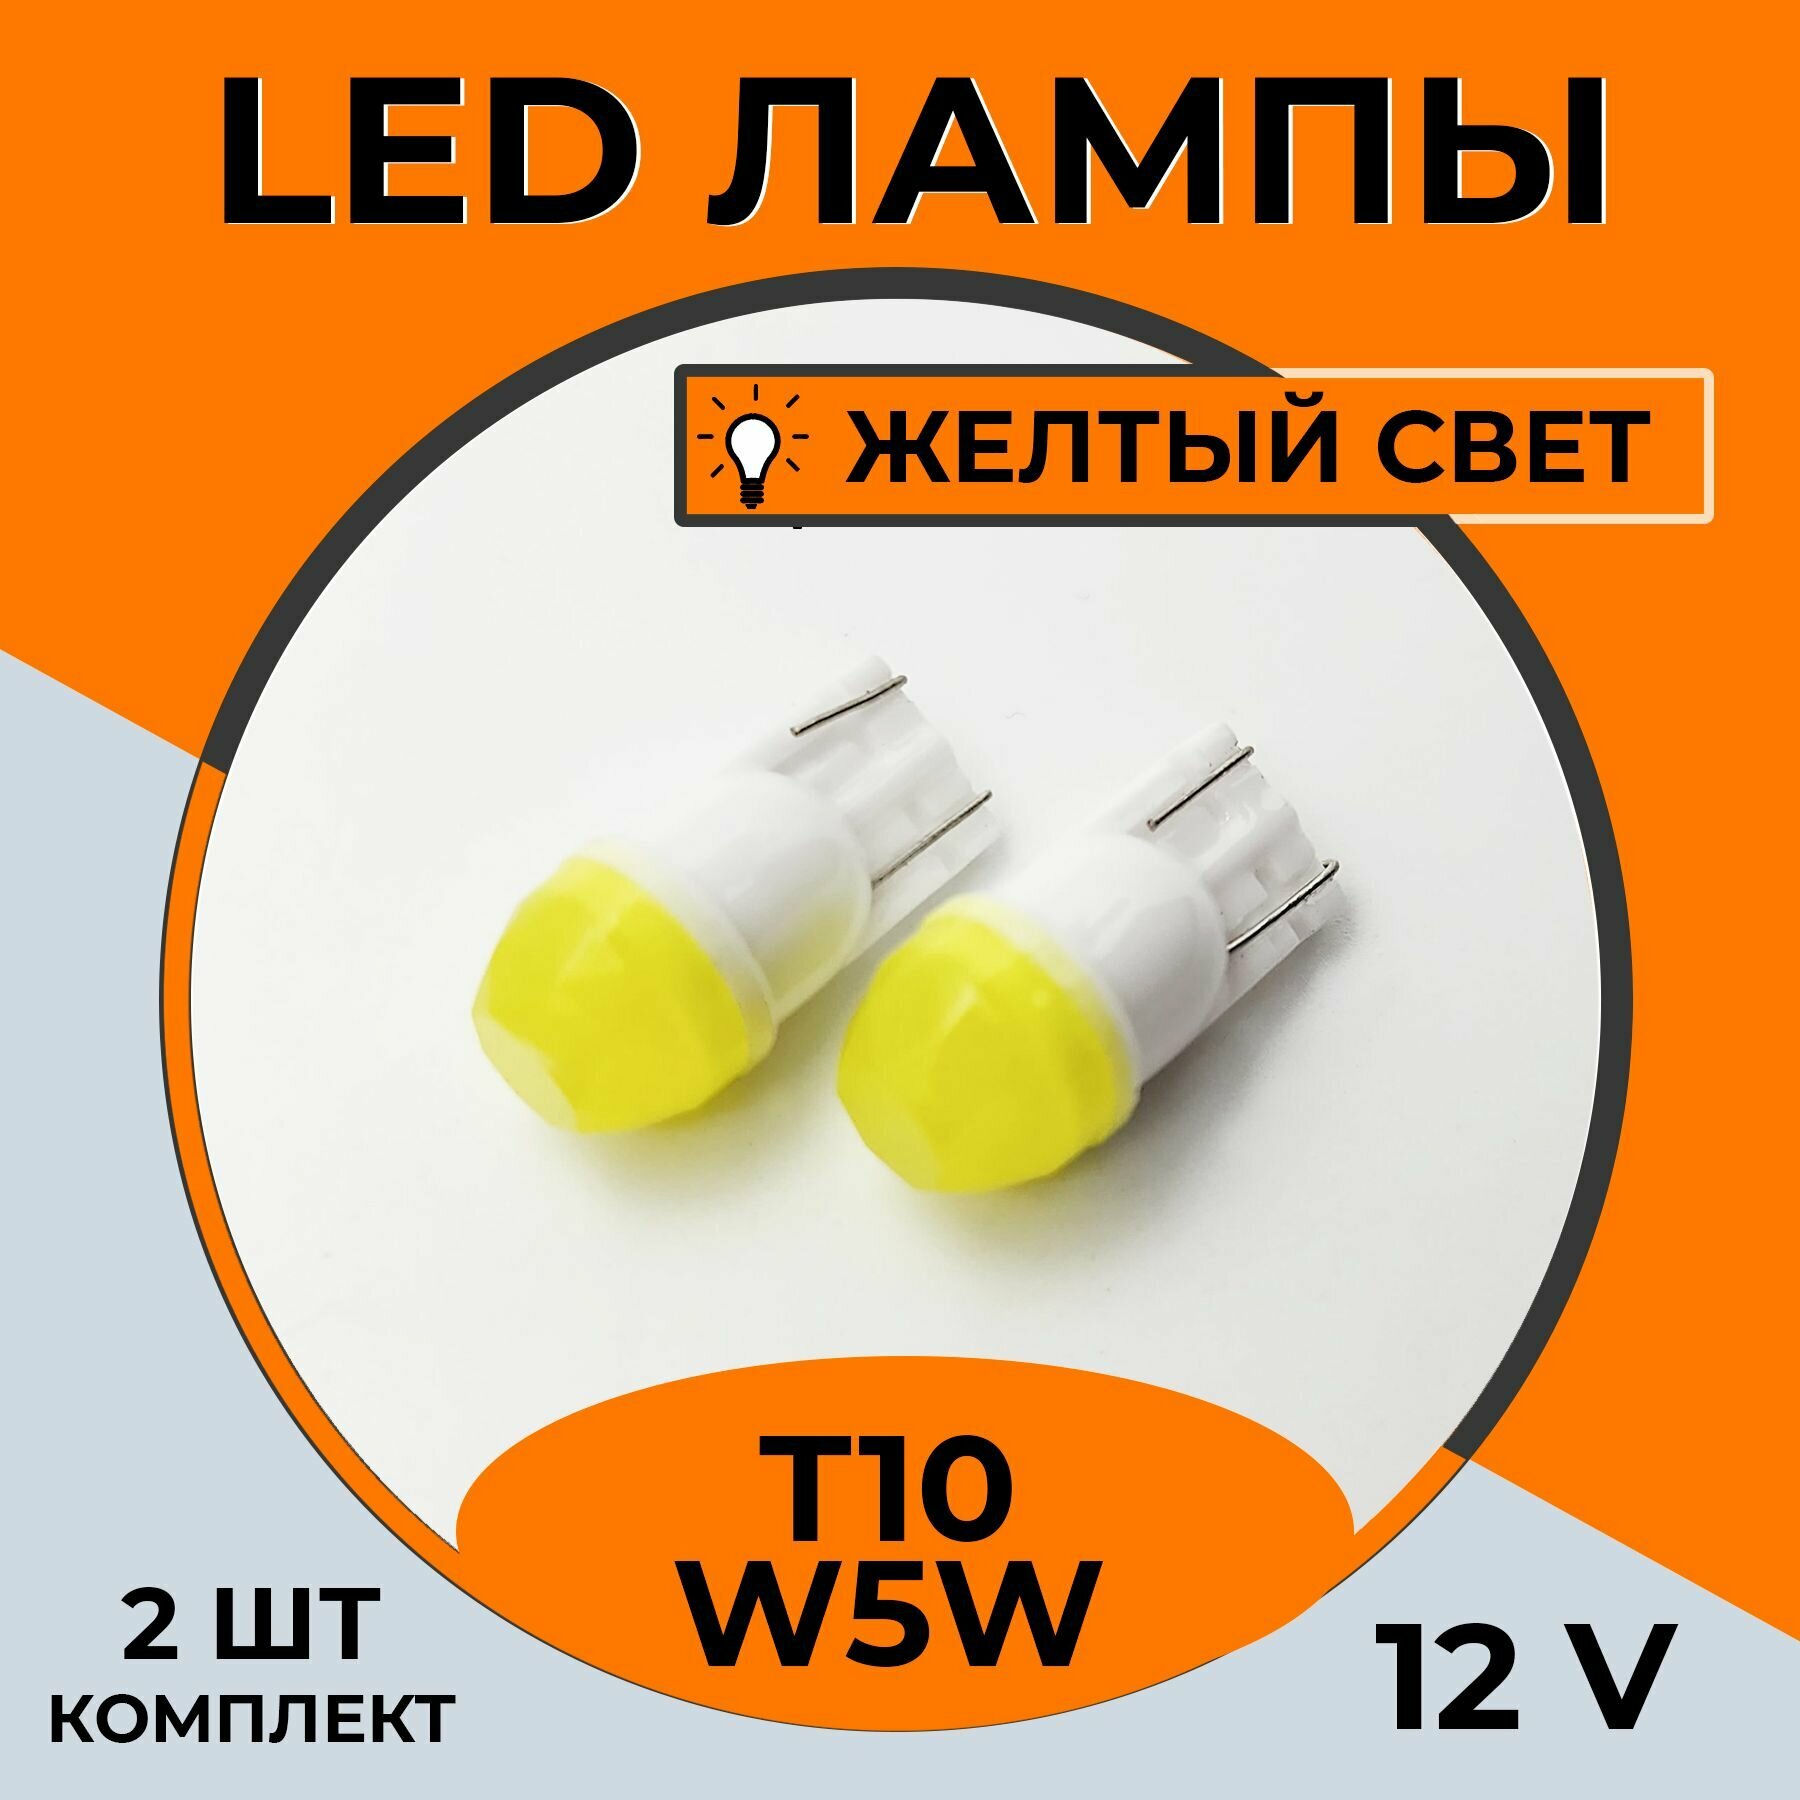 Автомобильная светодиодная LED лампа T10 W5W для подсветки салона, багажника, 12в желтый свет, 2 шт